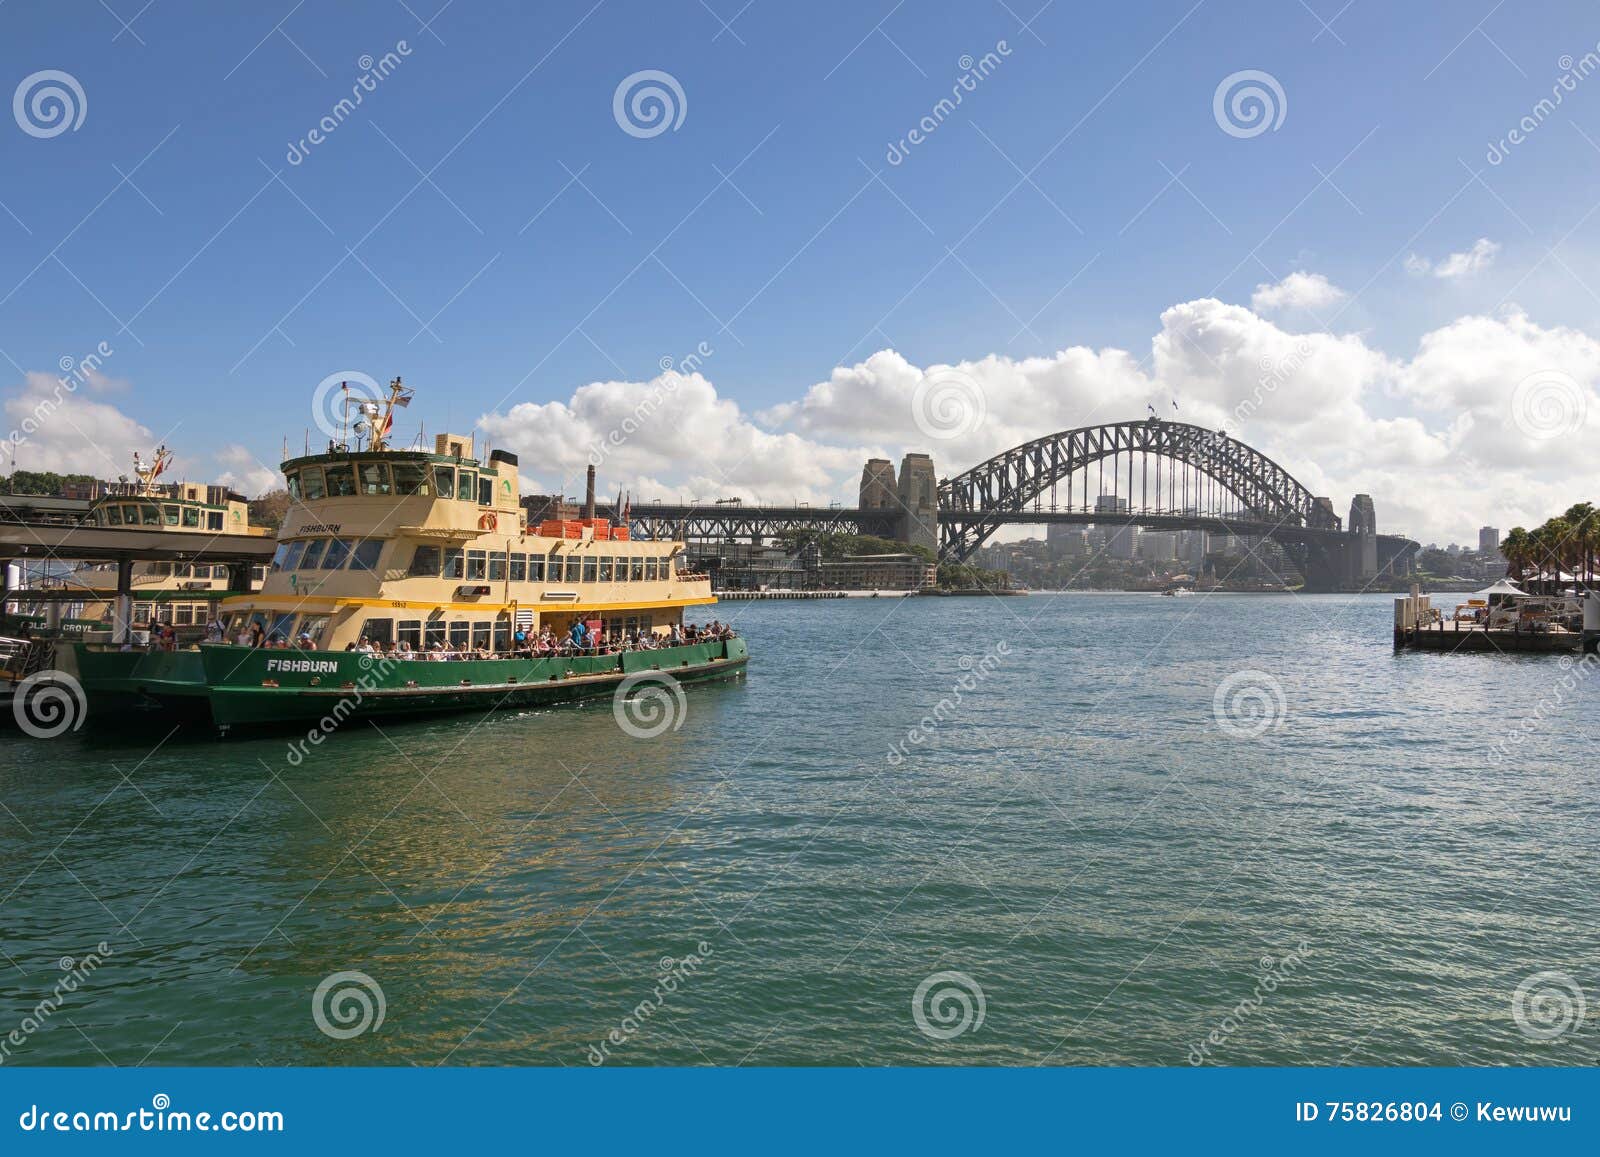 SYDNEY AUSTRALIEN - APRIL, 2016: Turister på Fishburn färjer anslutning på pir nära Sydney Harbour Bridge, den stål välva sig bron i Sydney, Australien på April 20, 2016